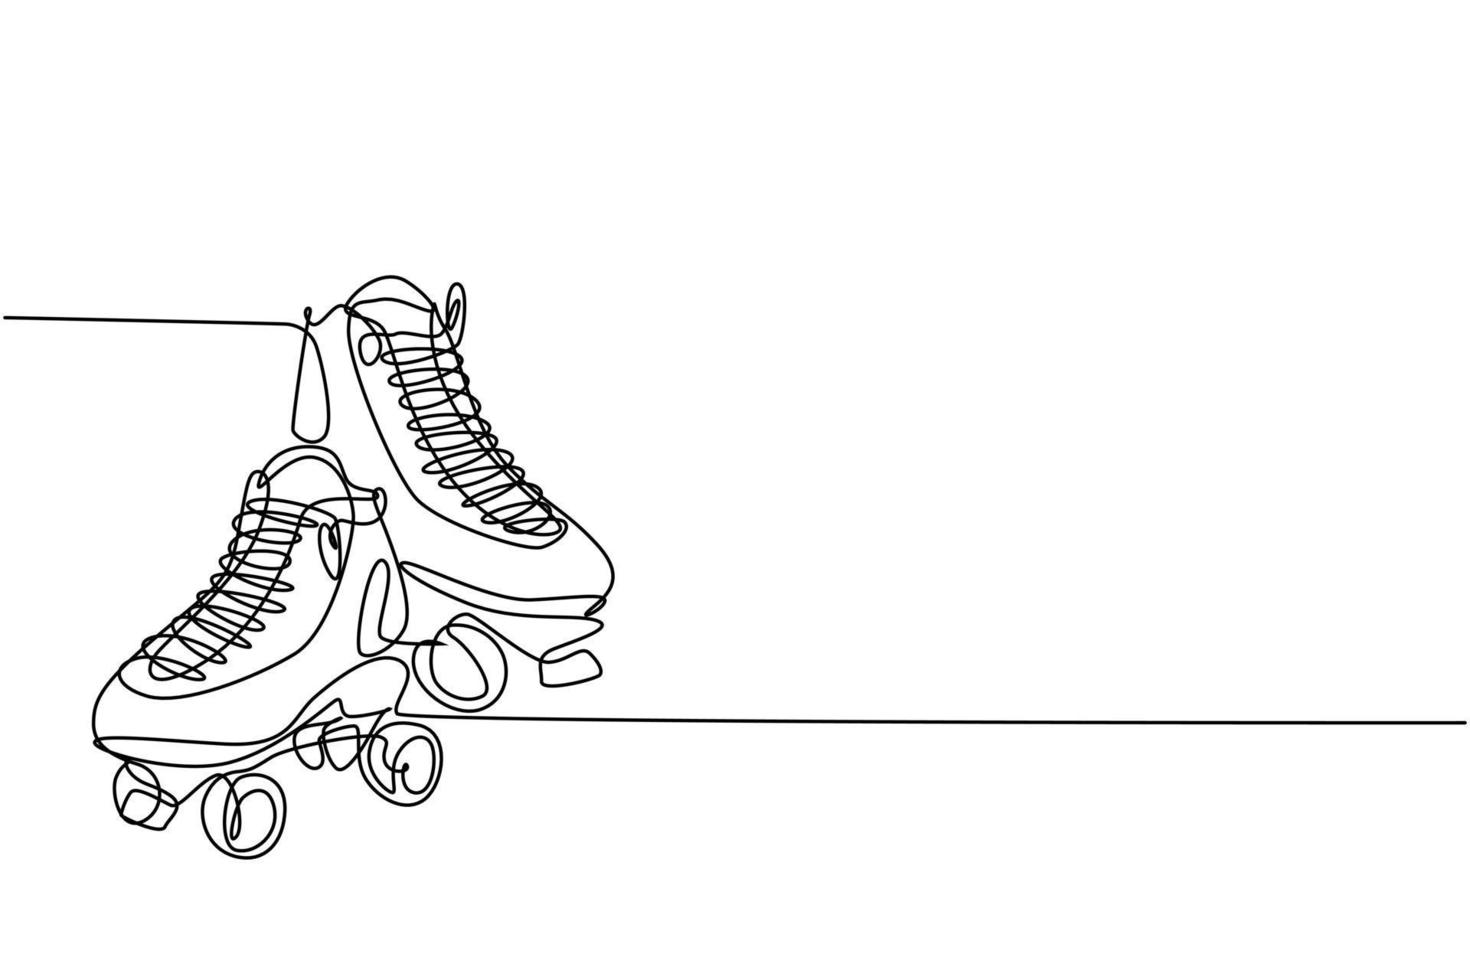 een enkele lijntekening van een paar oude retro plastic quad rolschaatsschoenen. trendy vintage klassiek sportconcept continu lijntekening grafisch ontwerp vectorillustratie vector